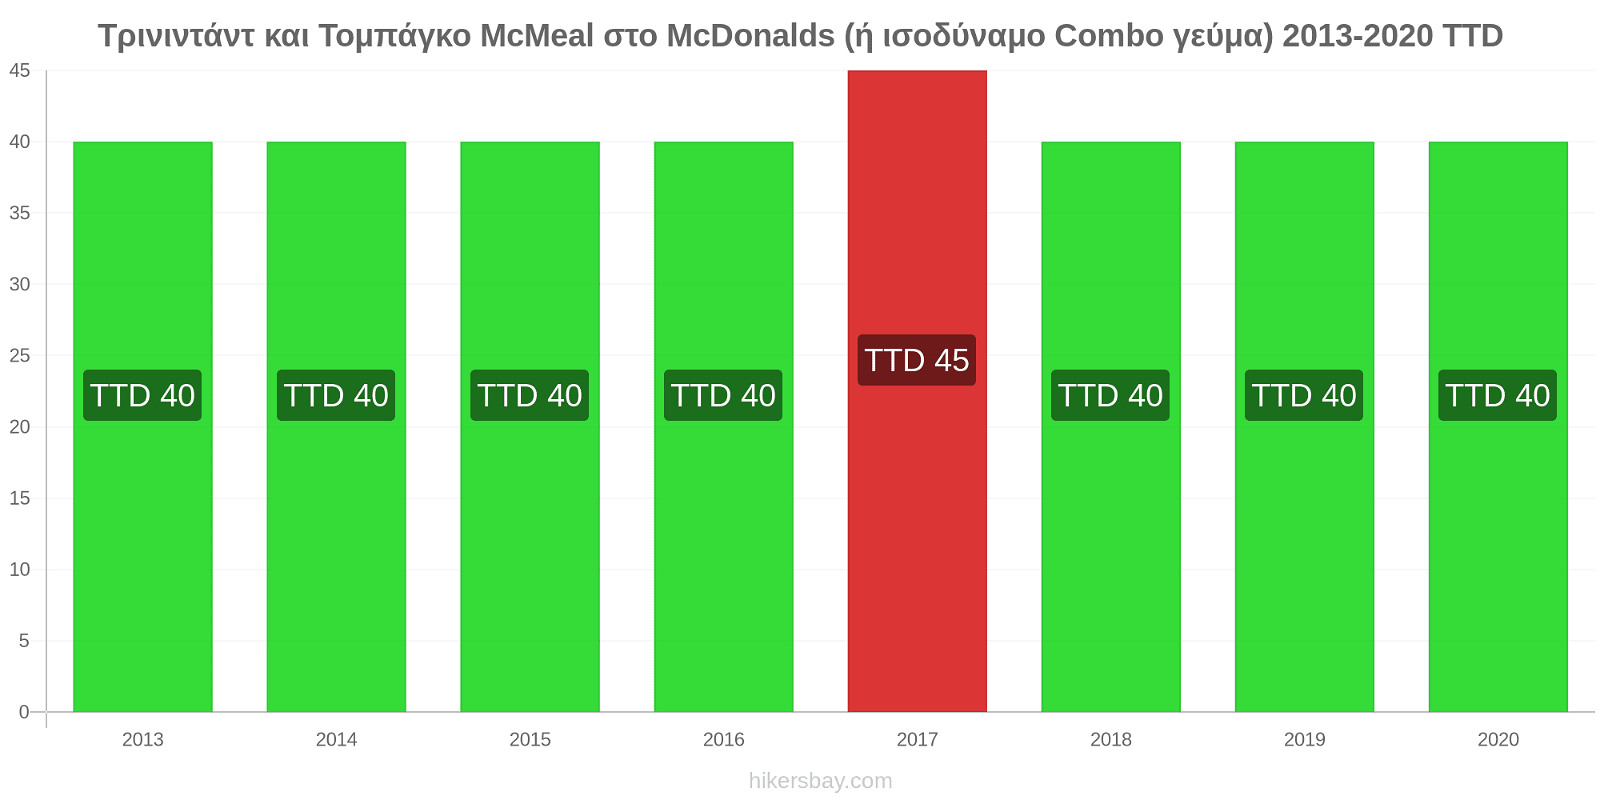 Τρινιντάντ και Τομπάγκο αλλαγές τιμών McMeal στο McDonalds (ή ισοδύναμο Combo γεύμα) hikersbay.com